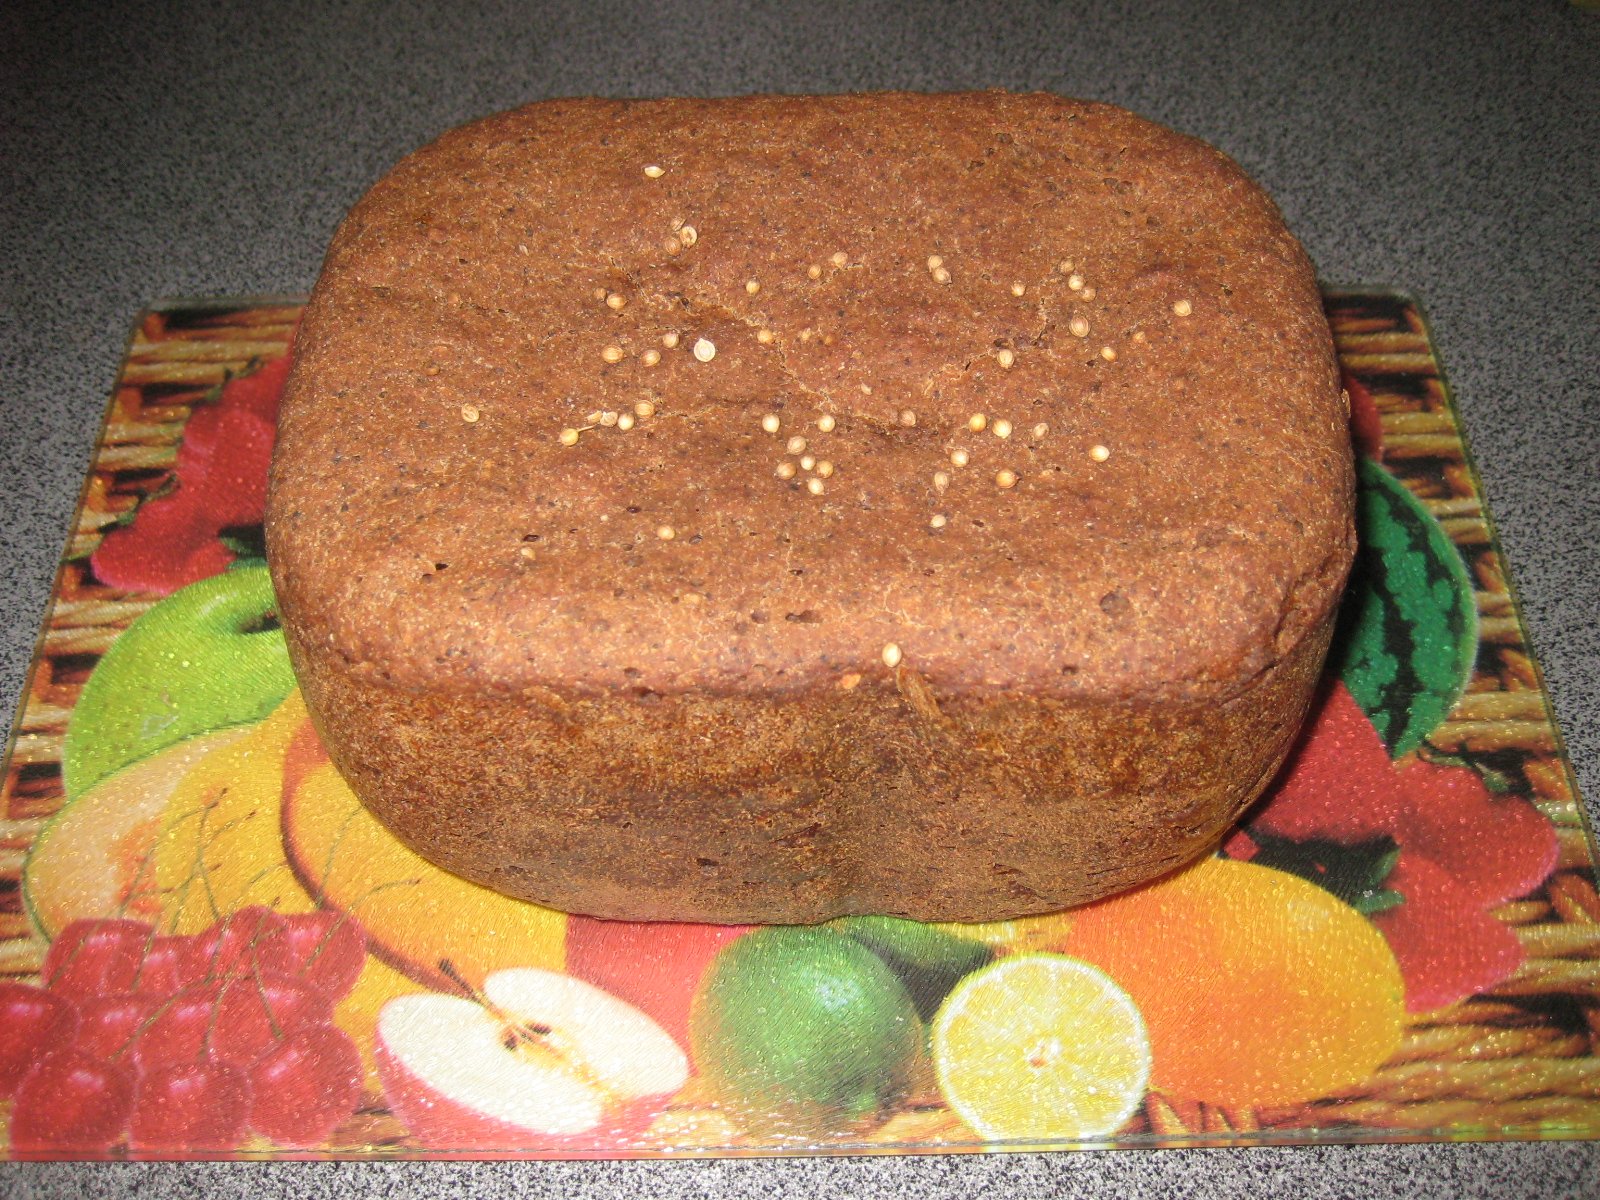 Borodino bread according to the recipe of 1939